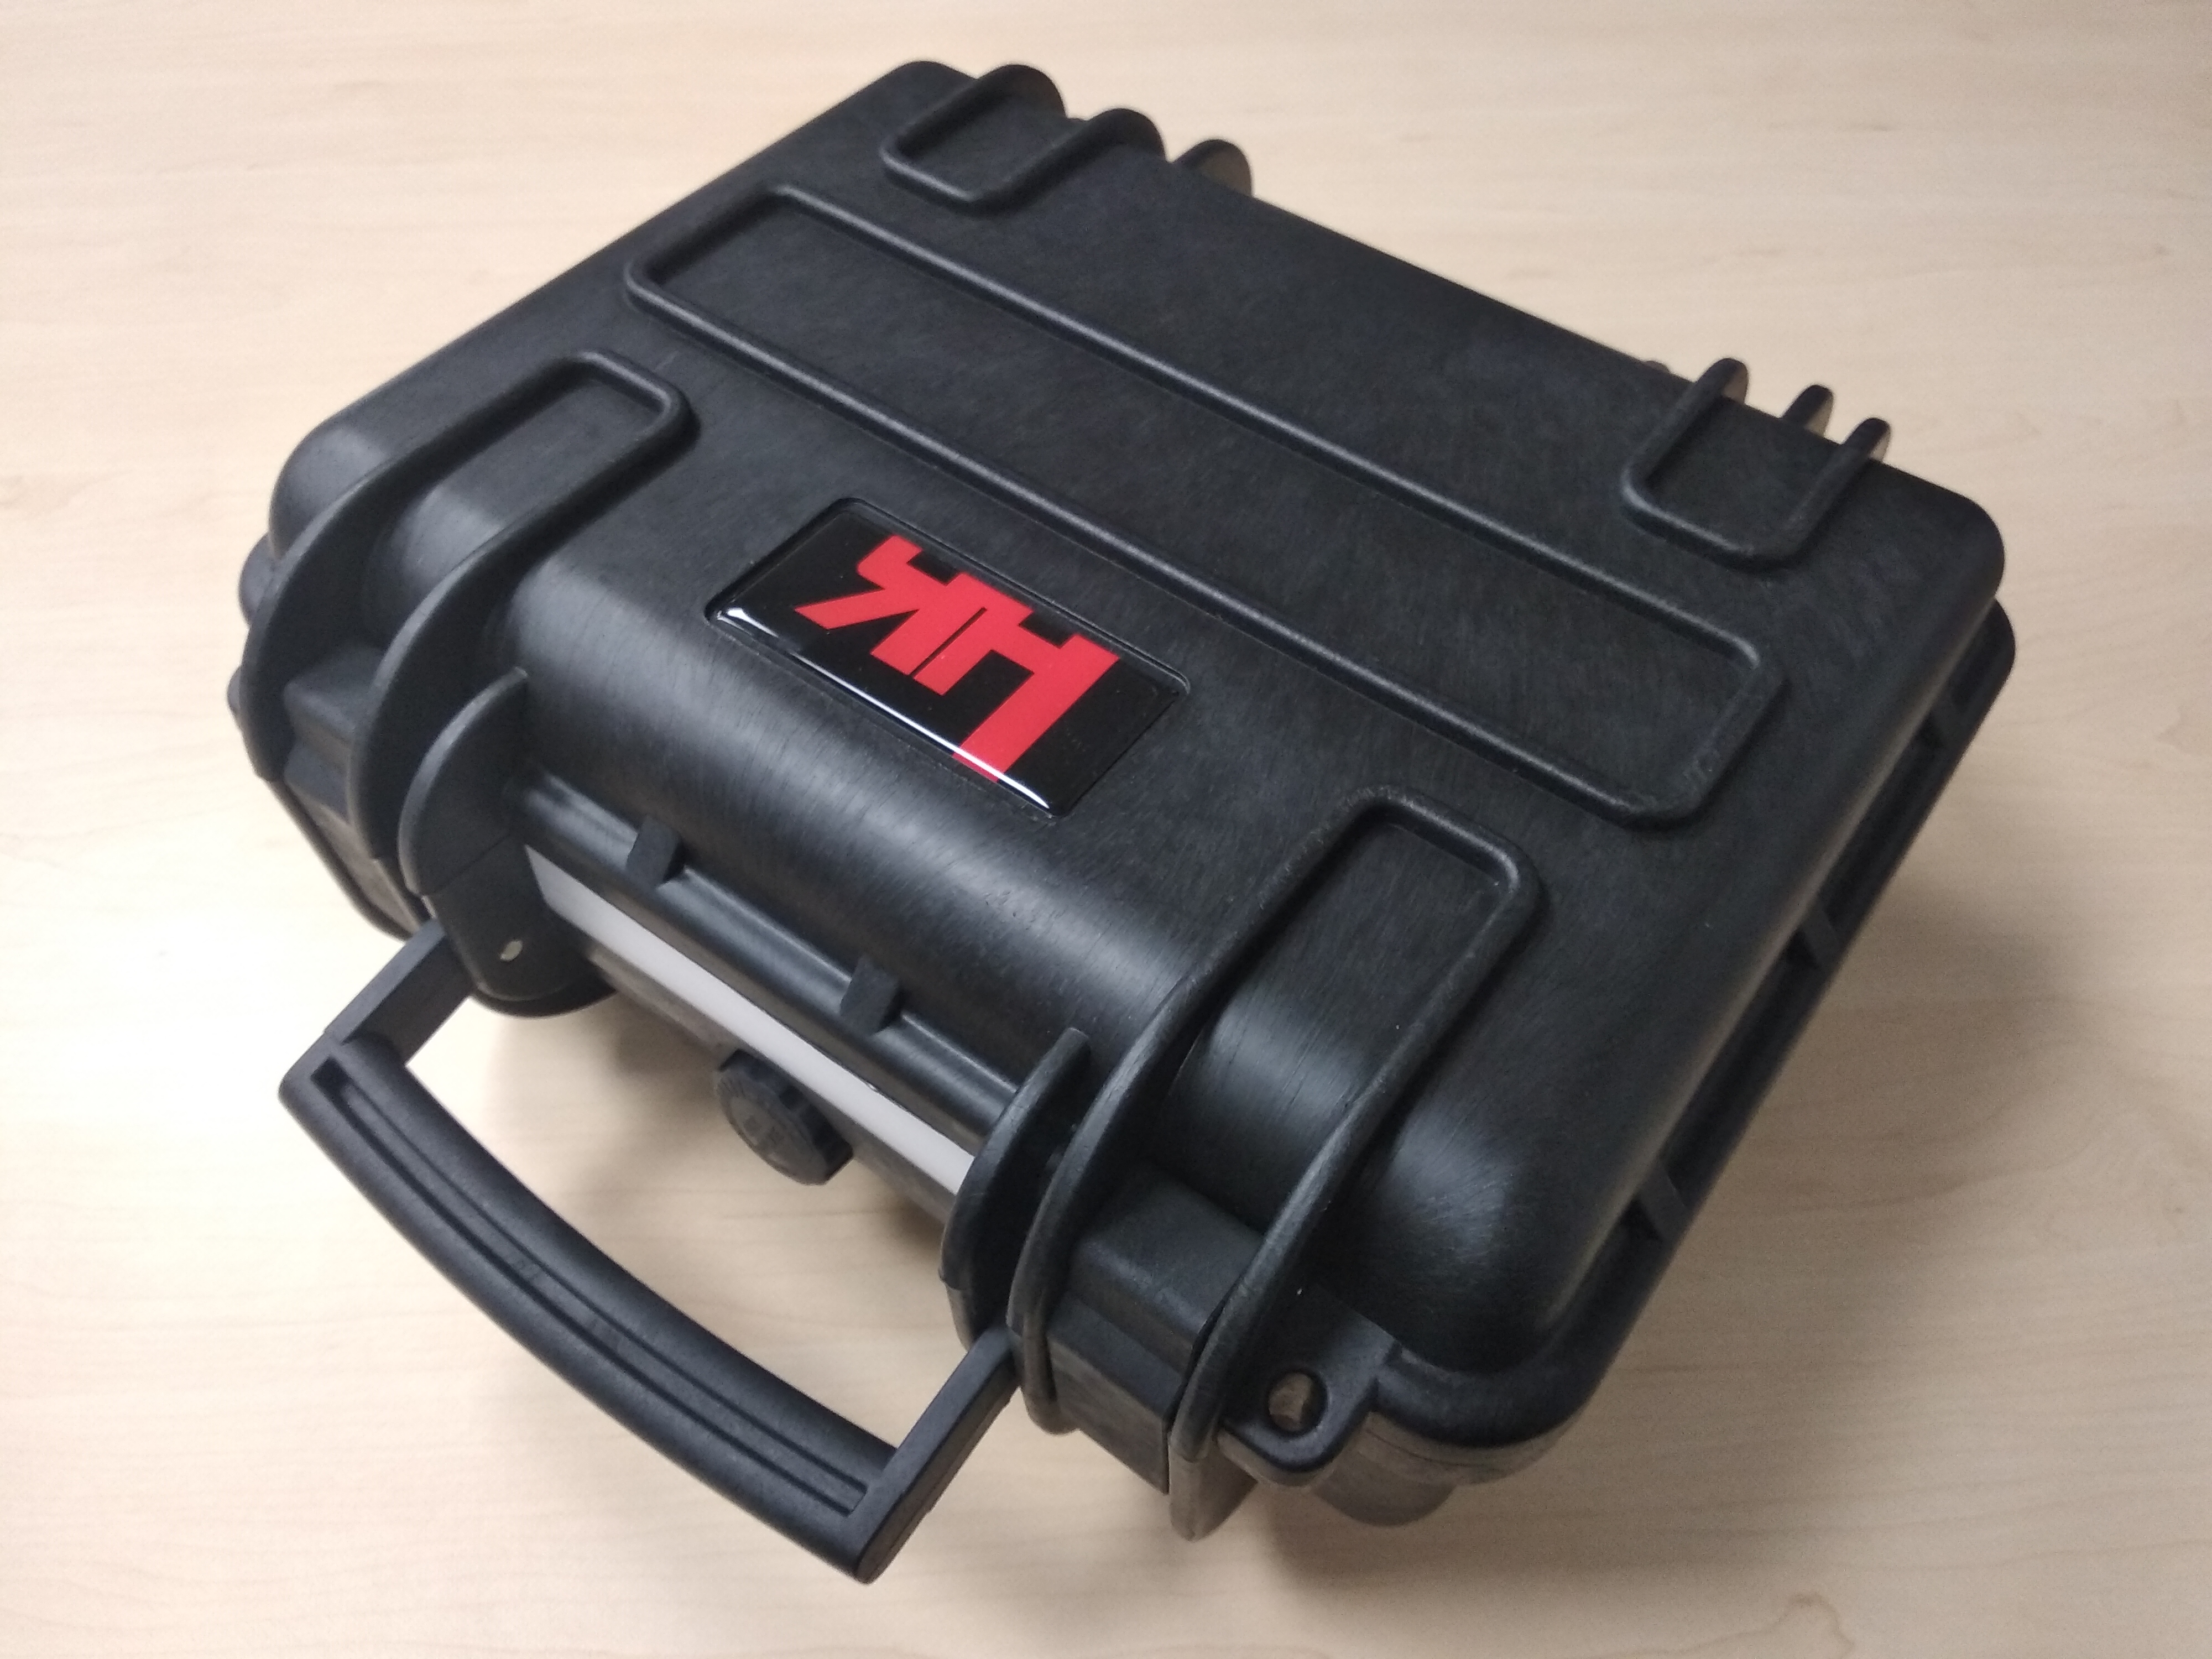 Kufřík na zbraň HK USP - hard case